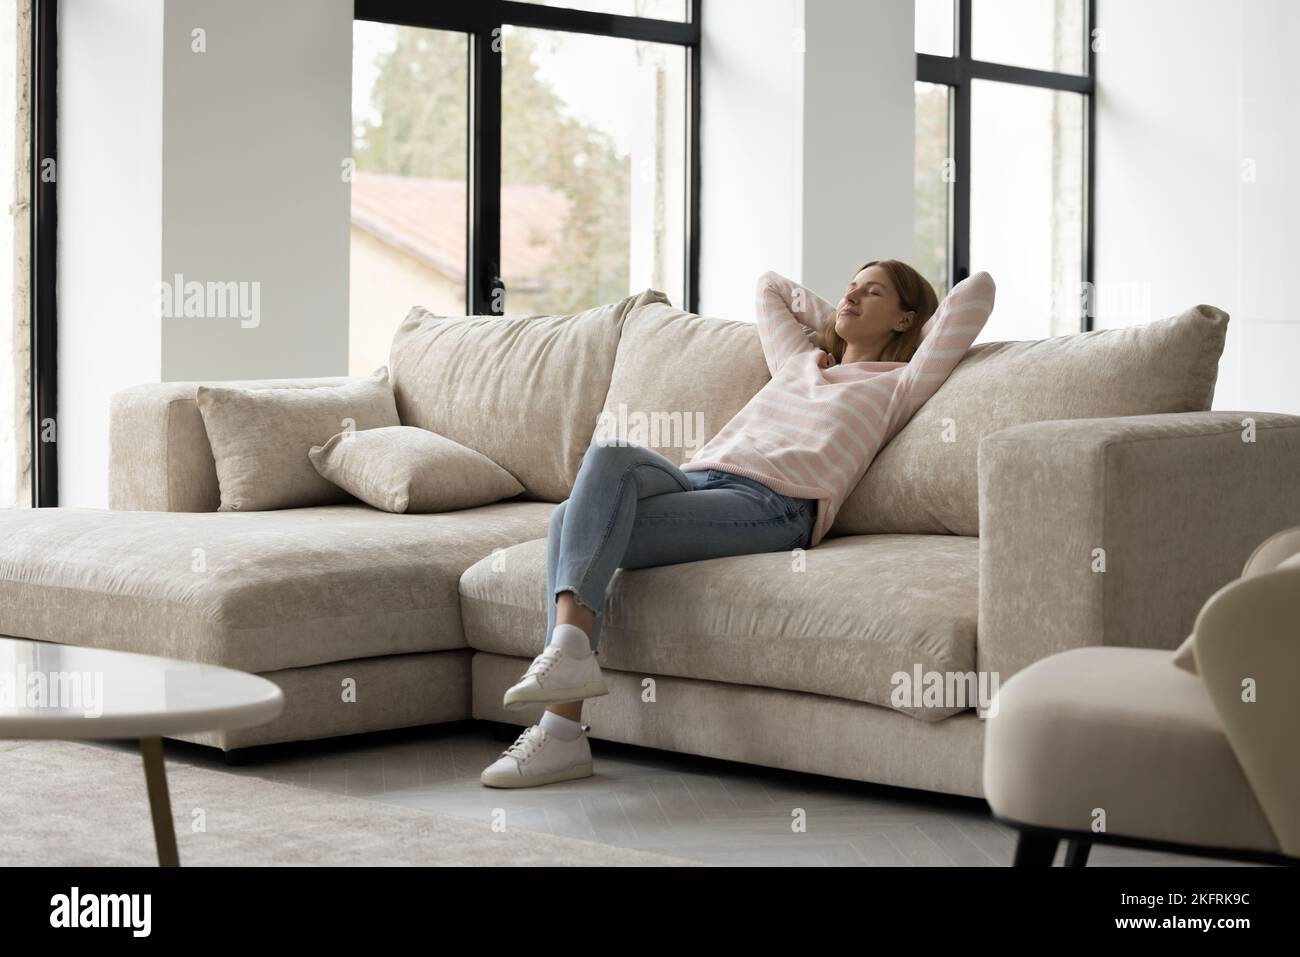 Donna in abiti casual trascorrere del tempo libero rilassandosi sul divano Foto Stock